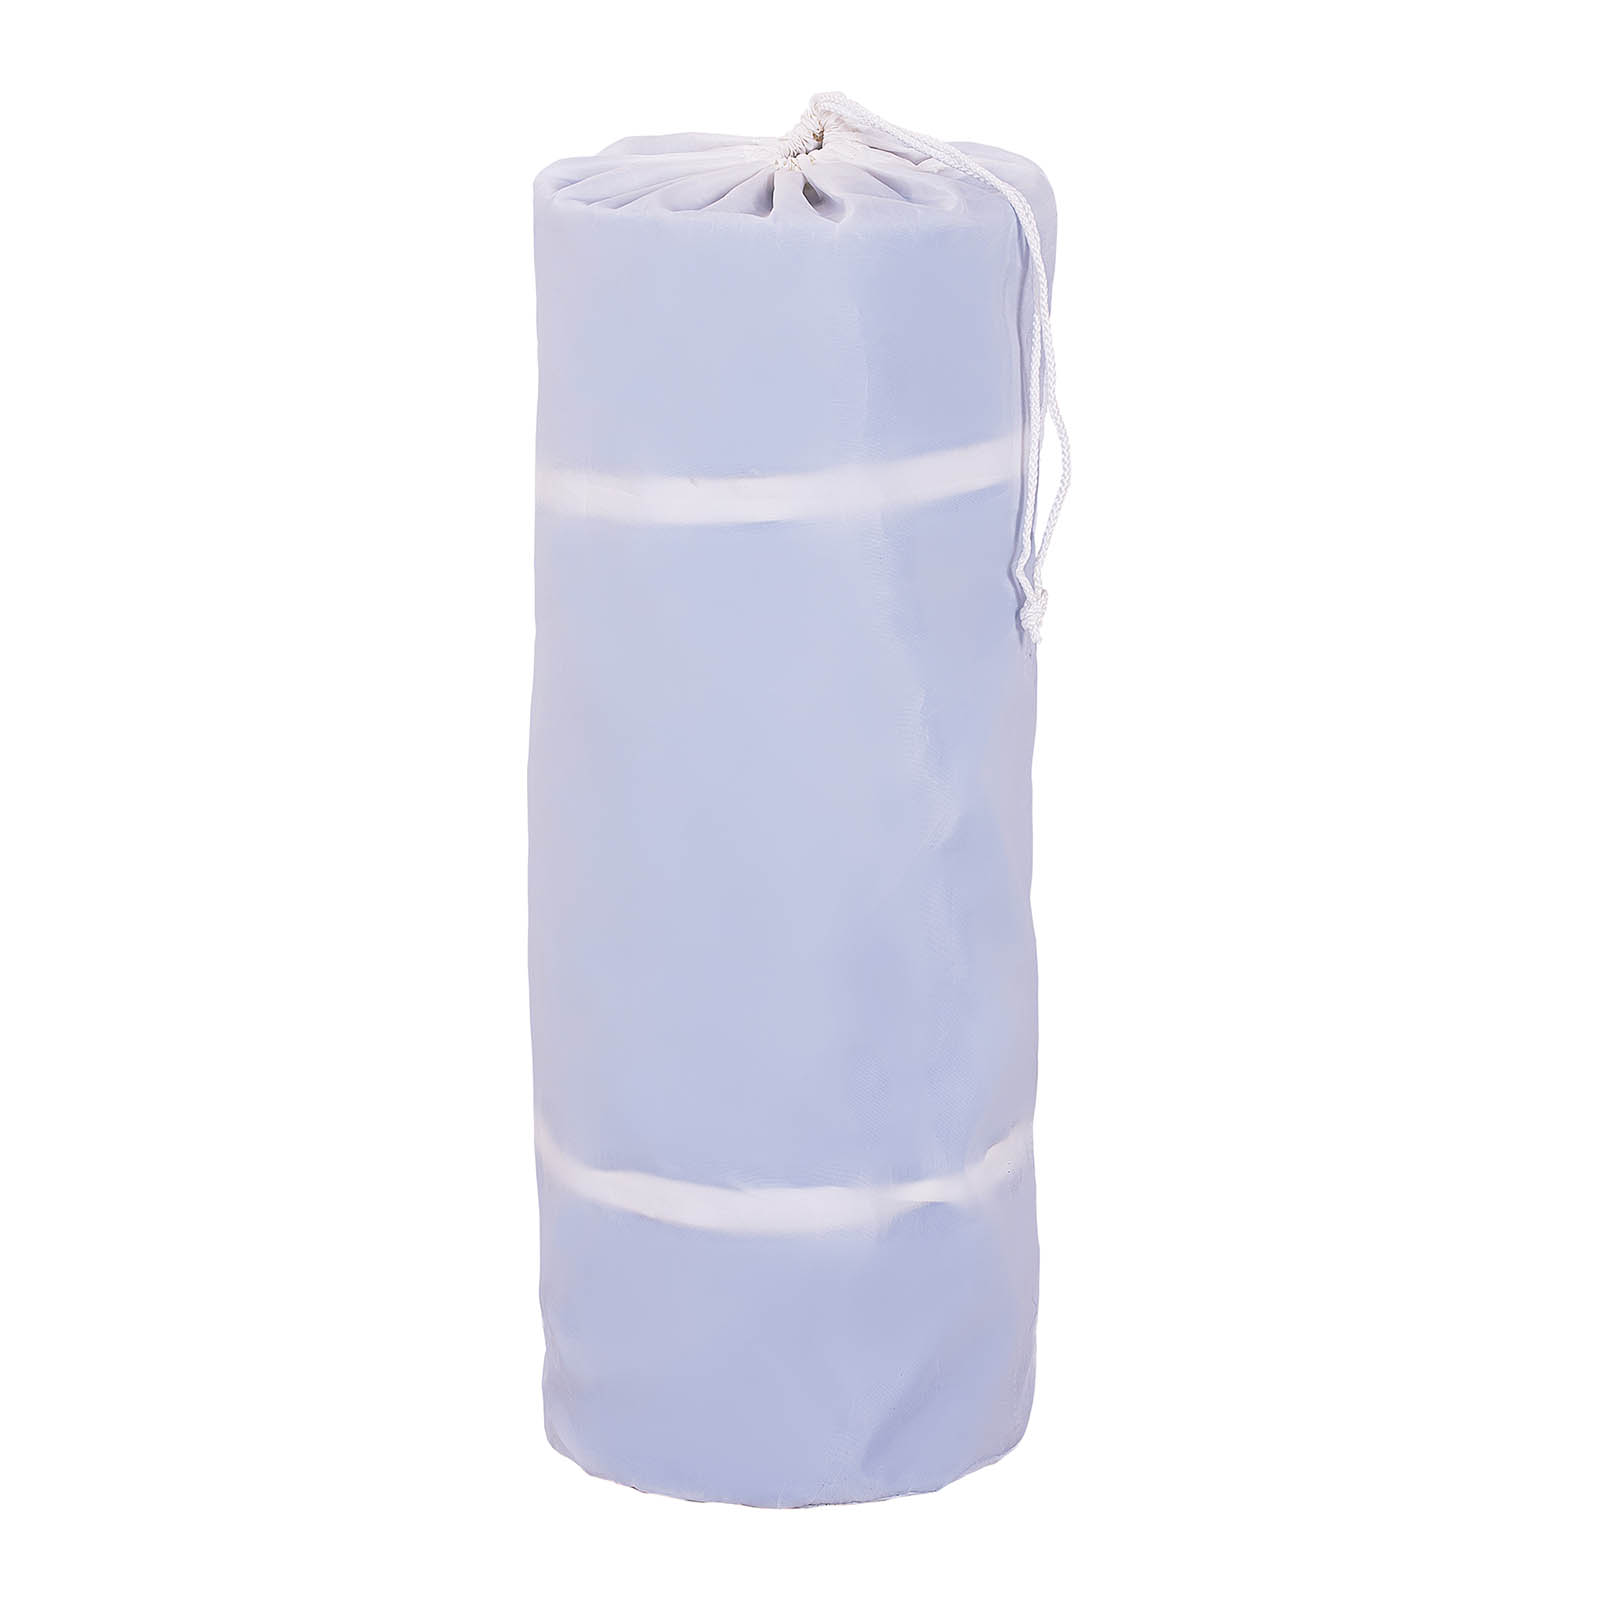 Felfújható tornaszőnyeg készlet pumpával - 300 x 100 x 20 cm - 150 kg - kék/fehér